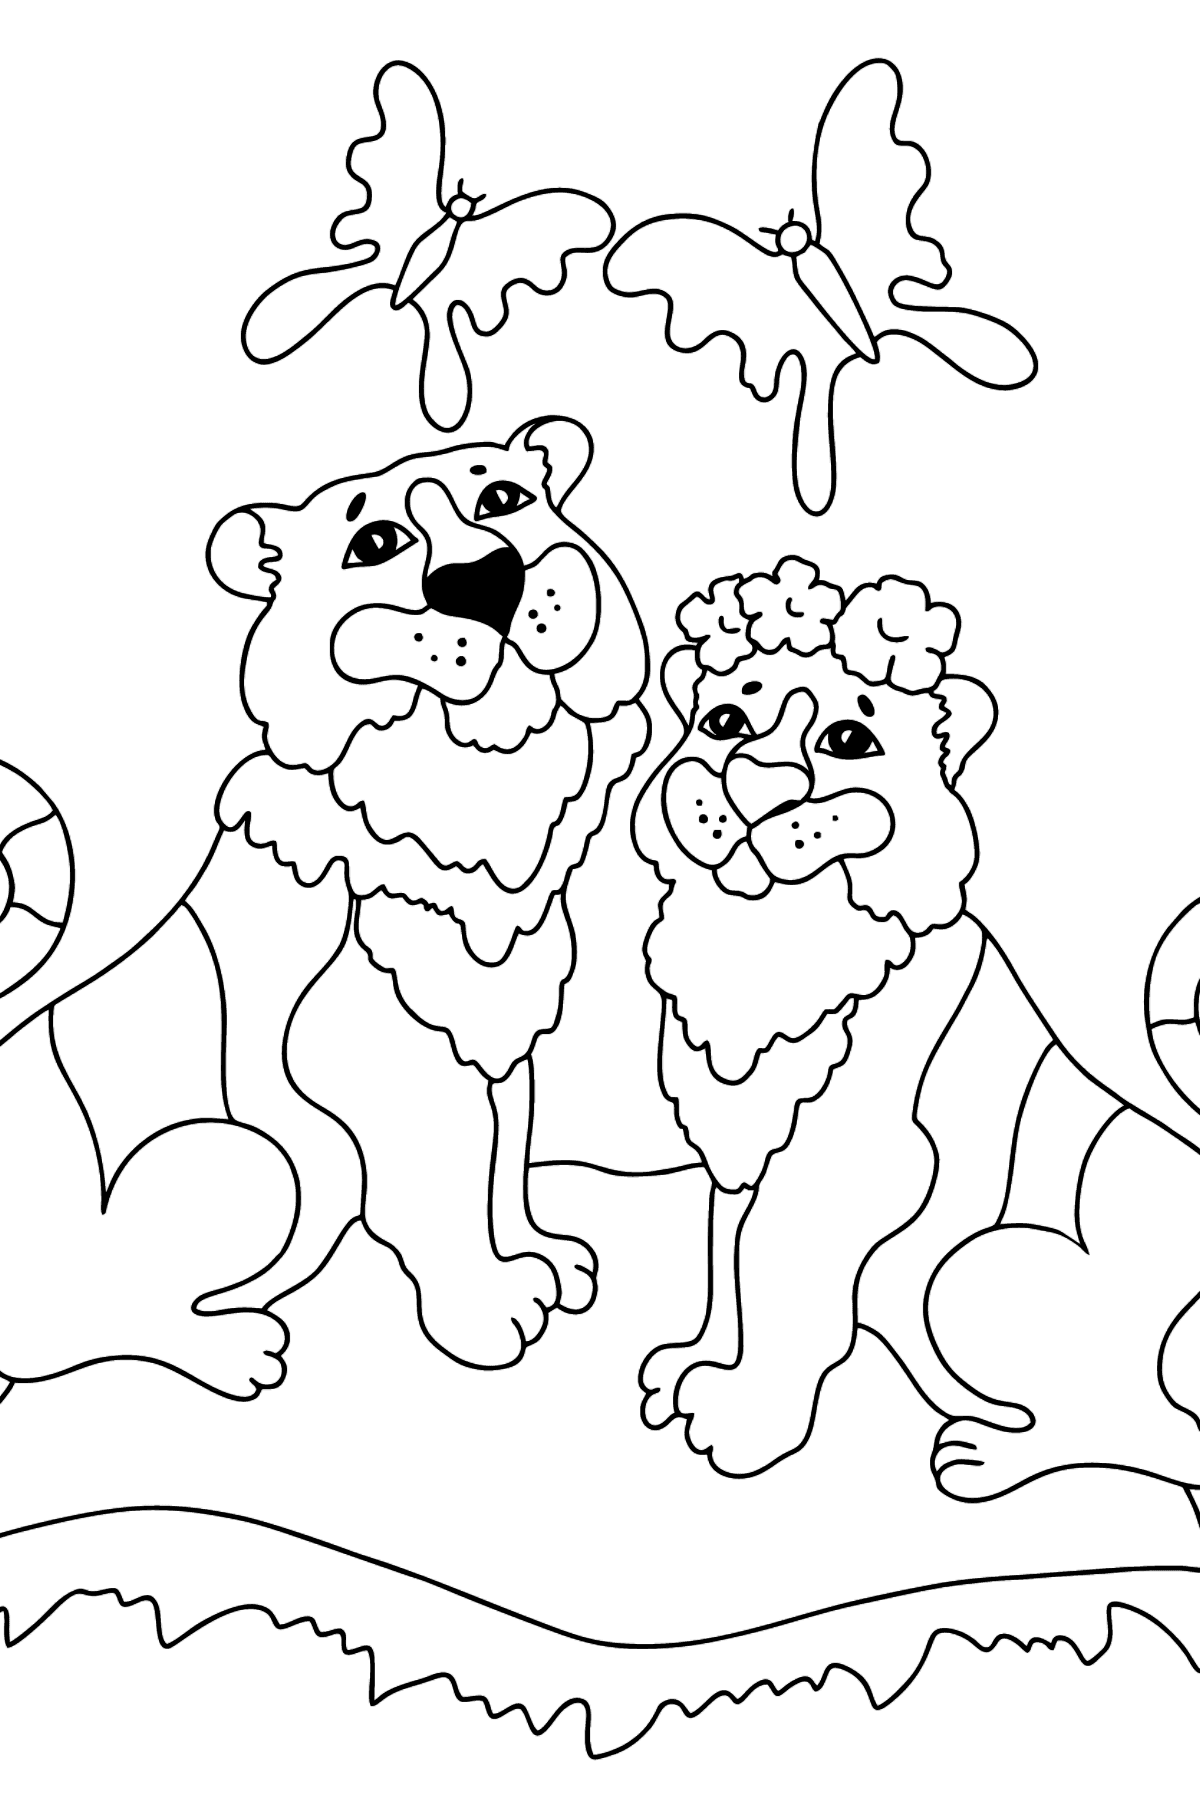 Desenho de tigre e tigresa para colorir (difícil) - Imagens para Colorir para Crianças